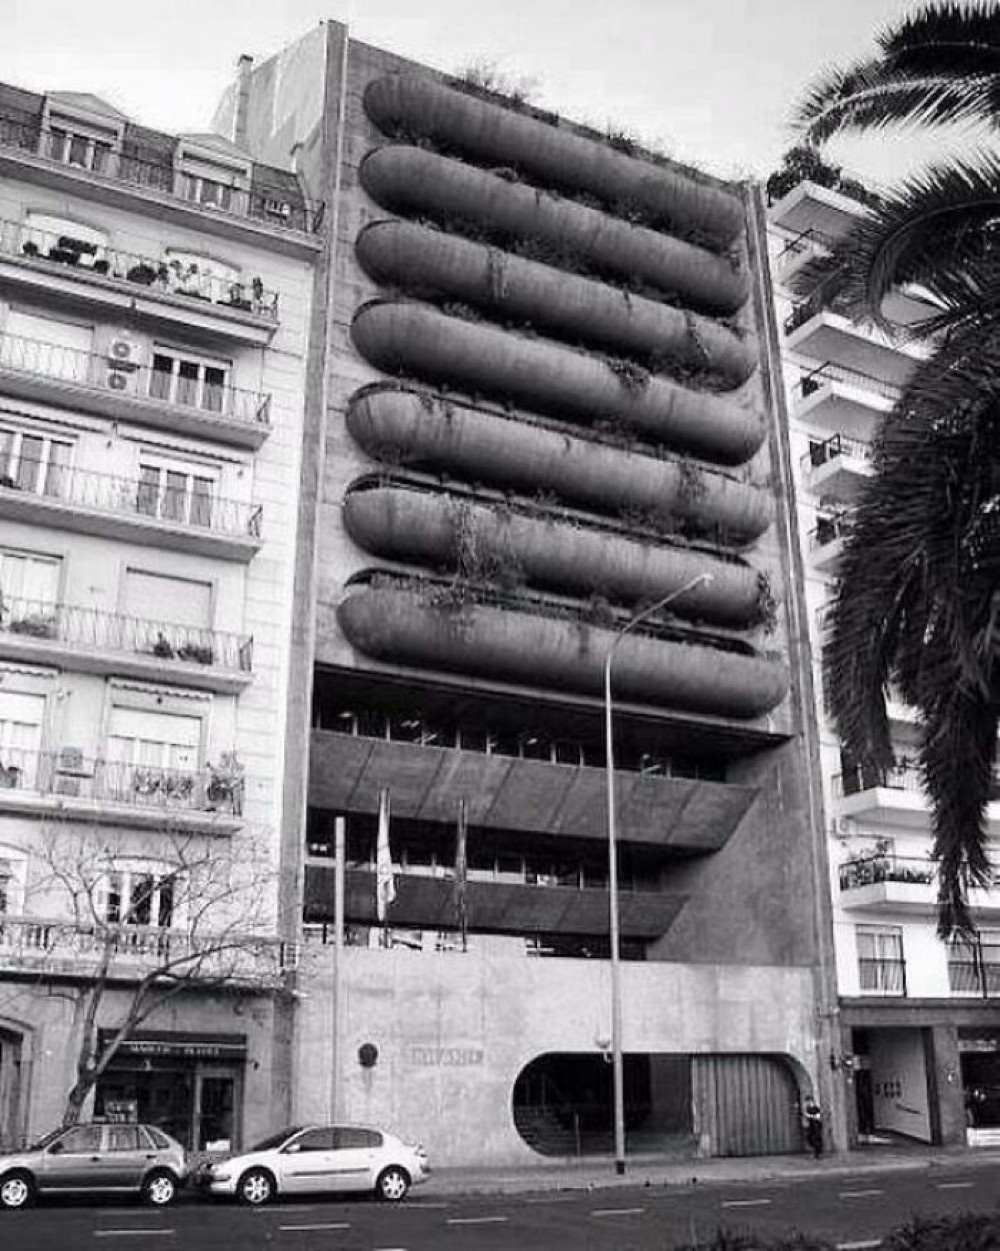 40. Посольство Бразилии в Буэнос-Айресе, Аргентина, построенное в 1978-89 годах. Архитектор - Олаво Редиг де Кампос